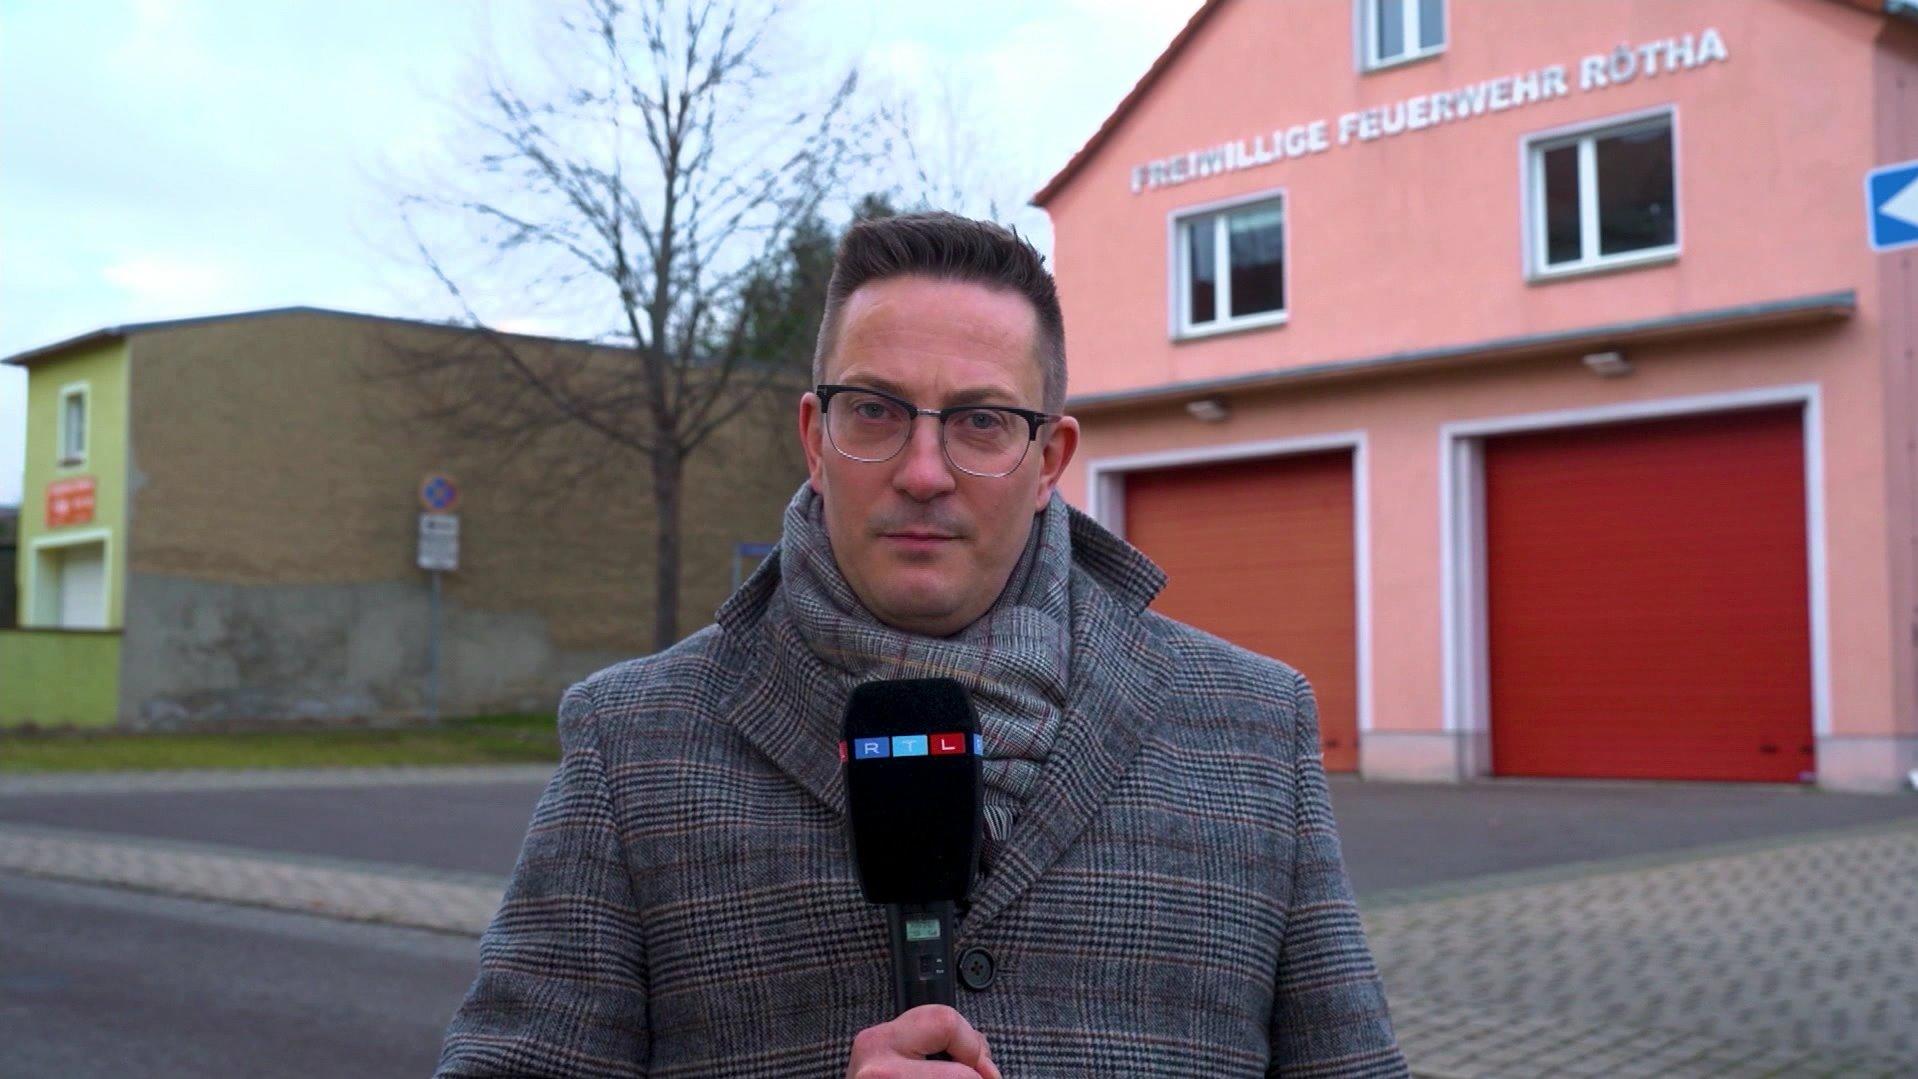 RTL-Reporter Frank Vacik konfrontierte die Beschuldigten mit den Vorwürfen.